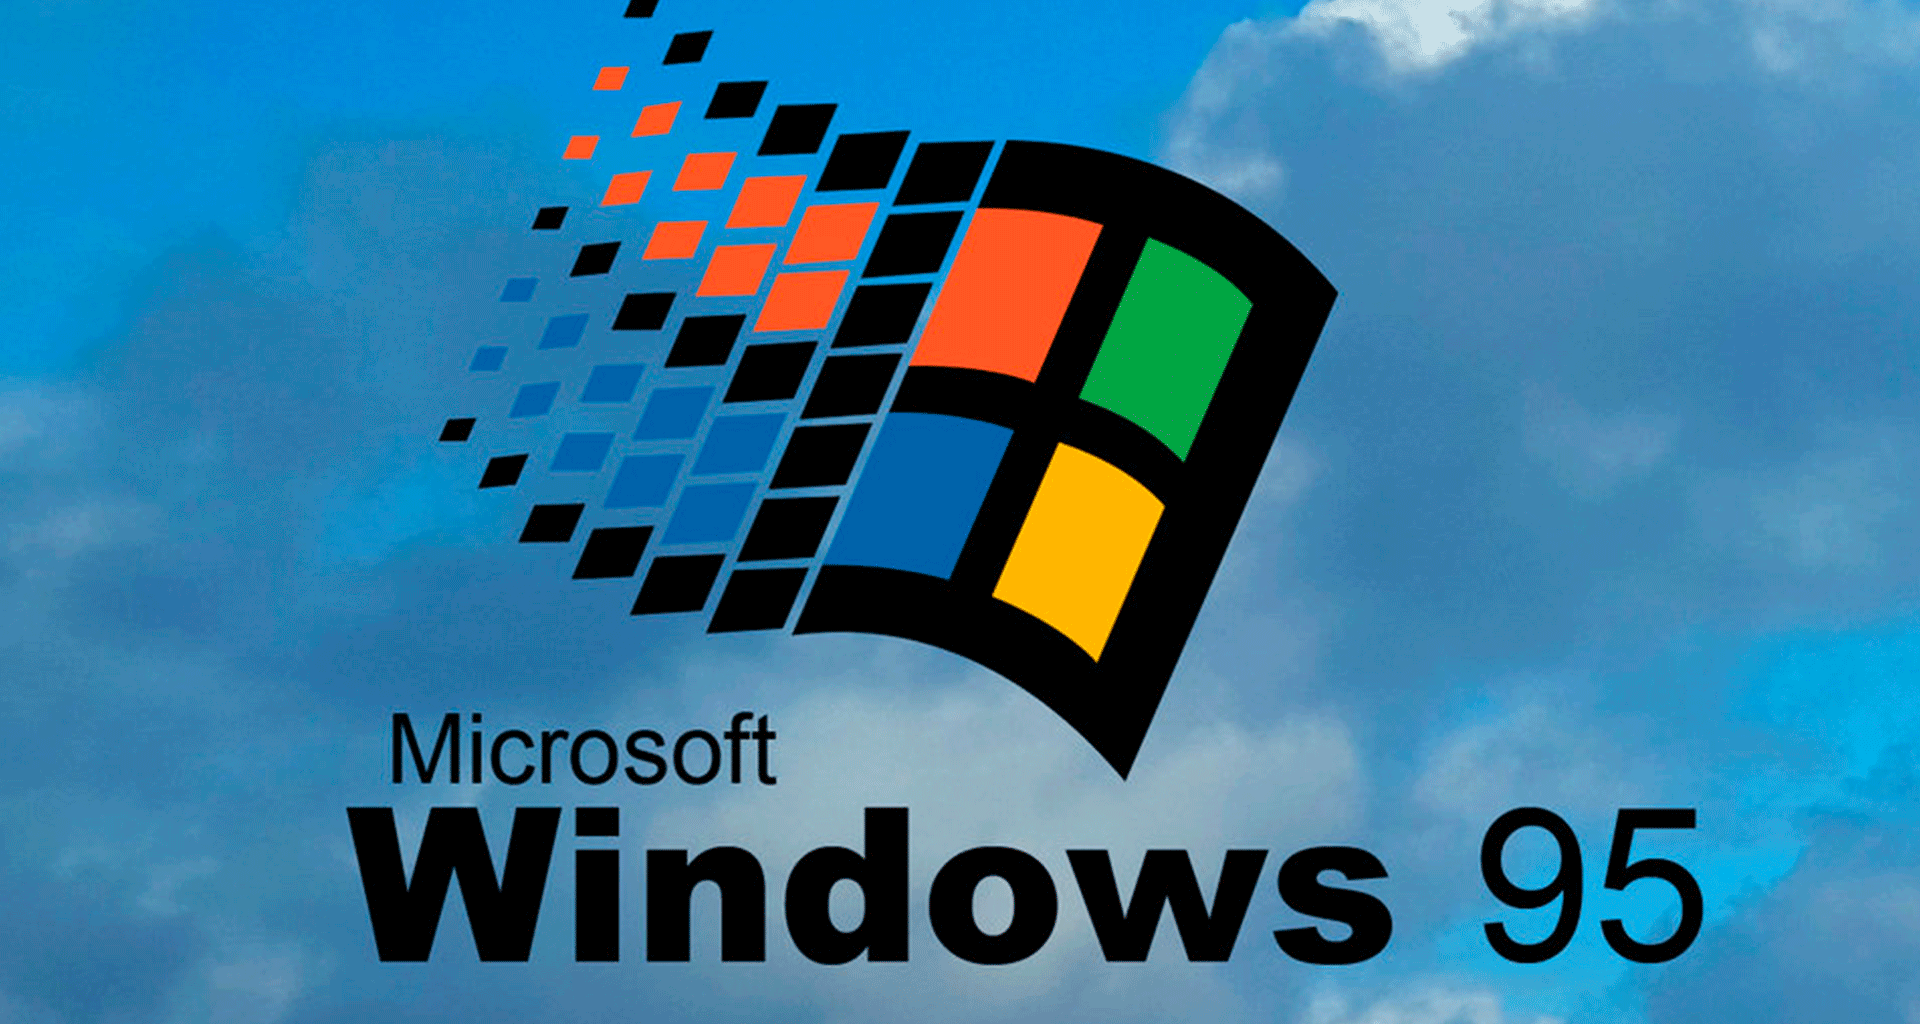 Có những ứng dụng khiến bạn không ai bỏ qua được, và ứng dụng nhớ Windows 95 chính là một trong số đó. Hãy đến và khám phá tính năng độc đáo của nó trong việc quản lý nhiều ứng dụng cùng lúc nhé!